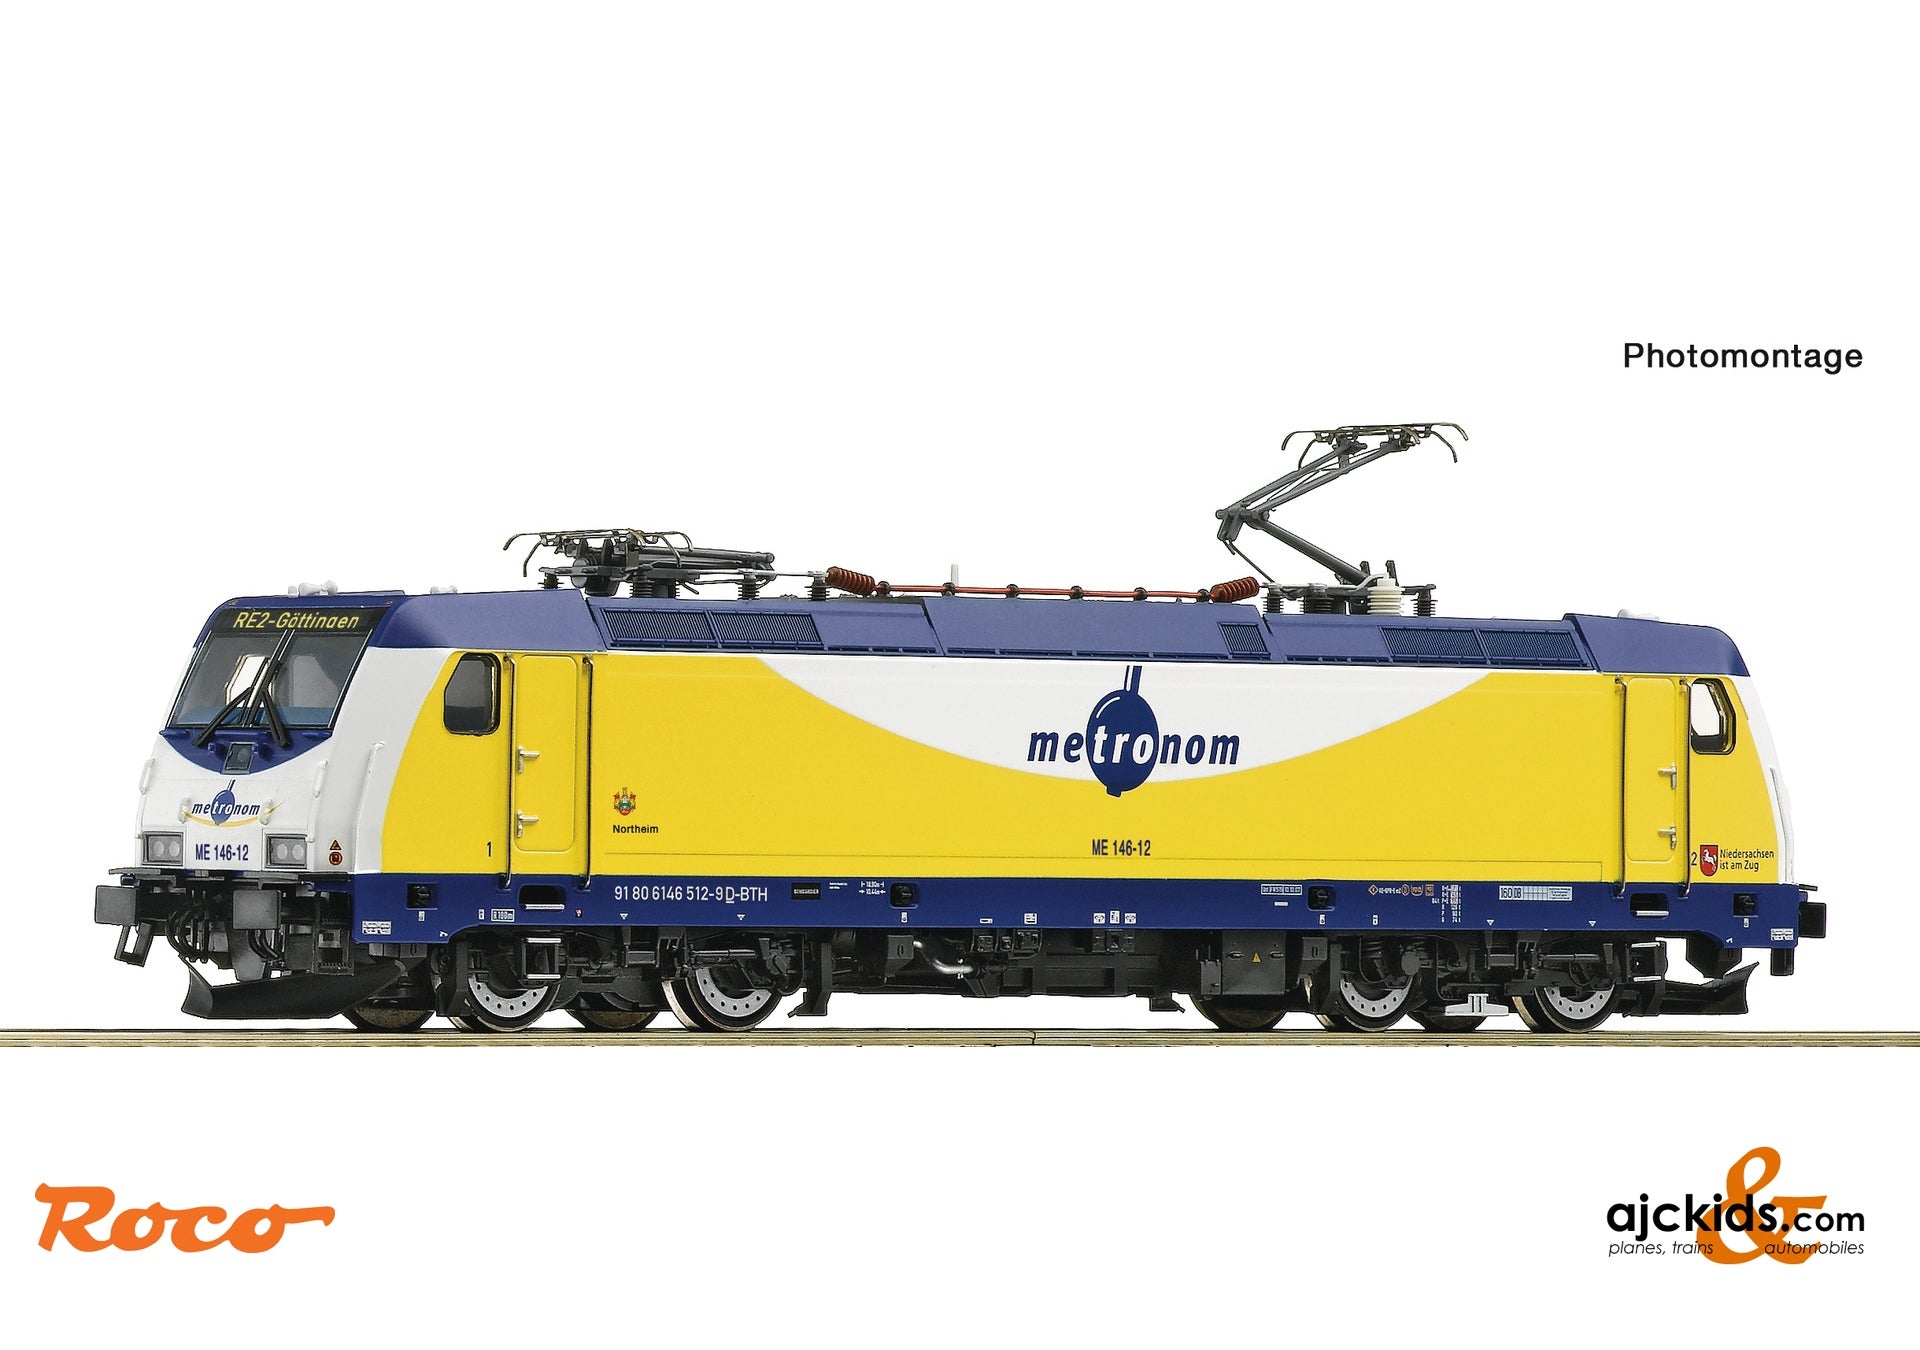 Roco 7510037 - Electric Locomotive ME 14 6-12, metronom, EAN: 9005033064143